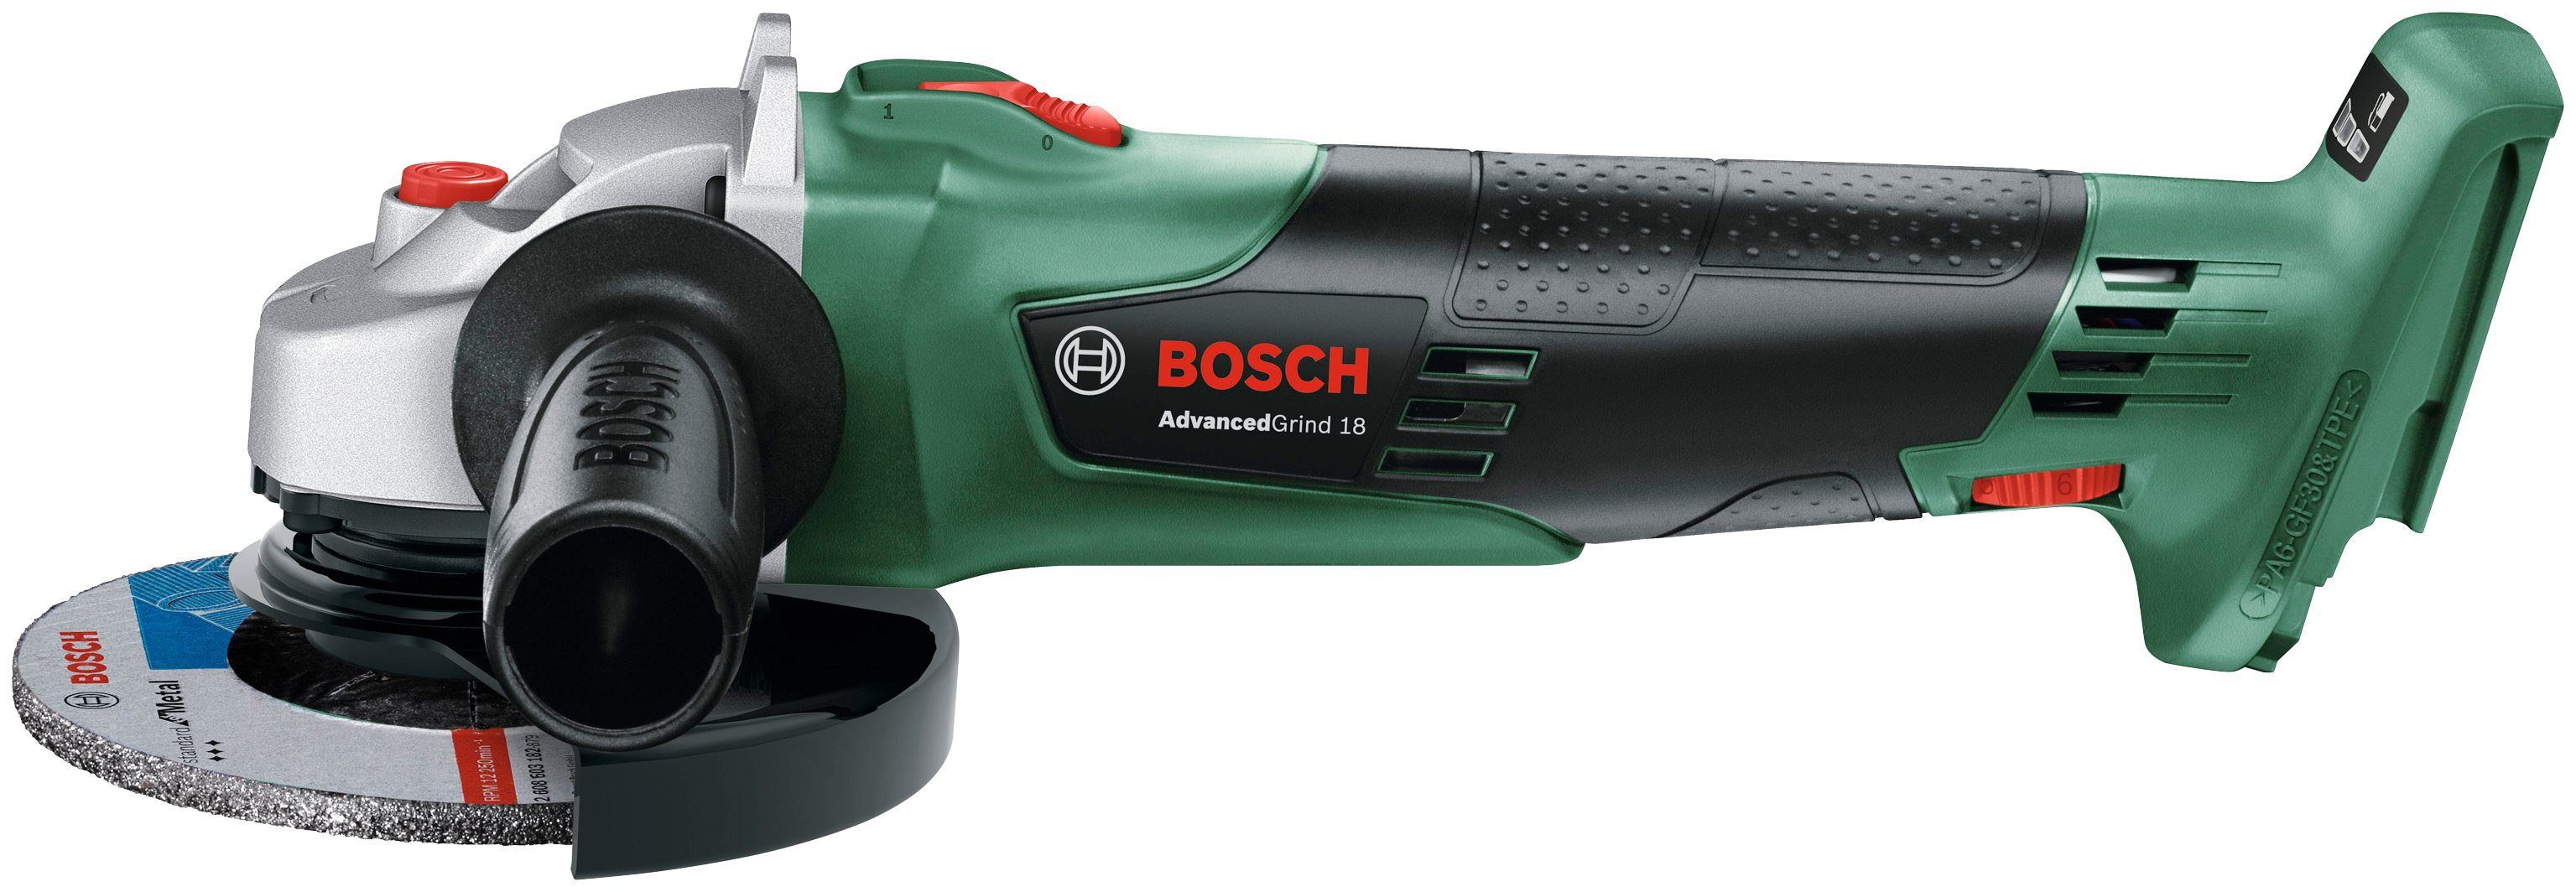 Bosch Home & Garden Akku-Winkelschleifer »AdvancedGrind 18«, max. 11500  U/min, ohne Akku und Ladegerät